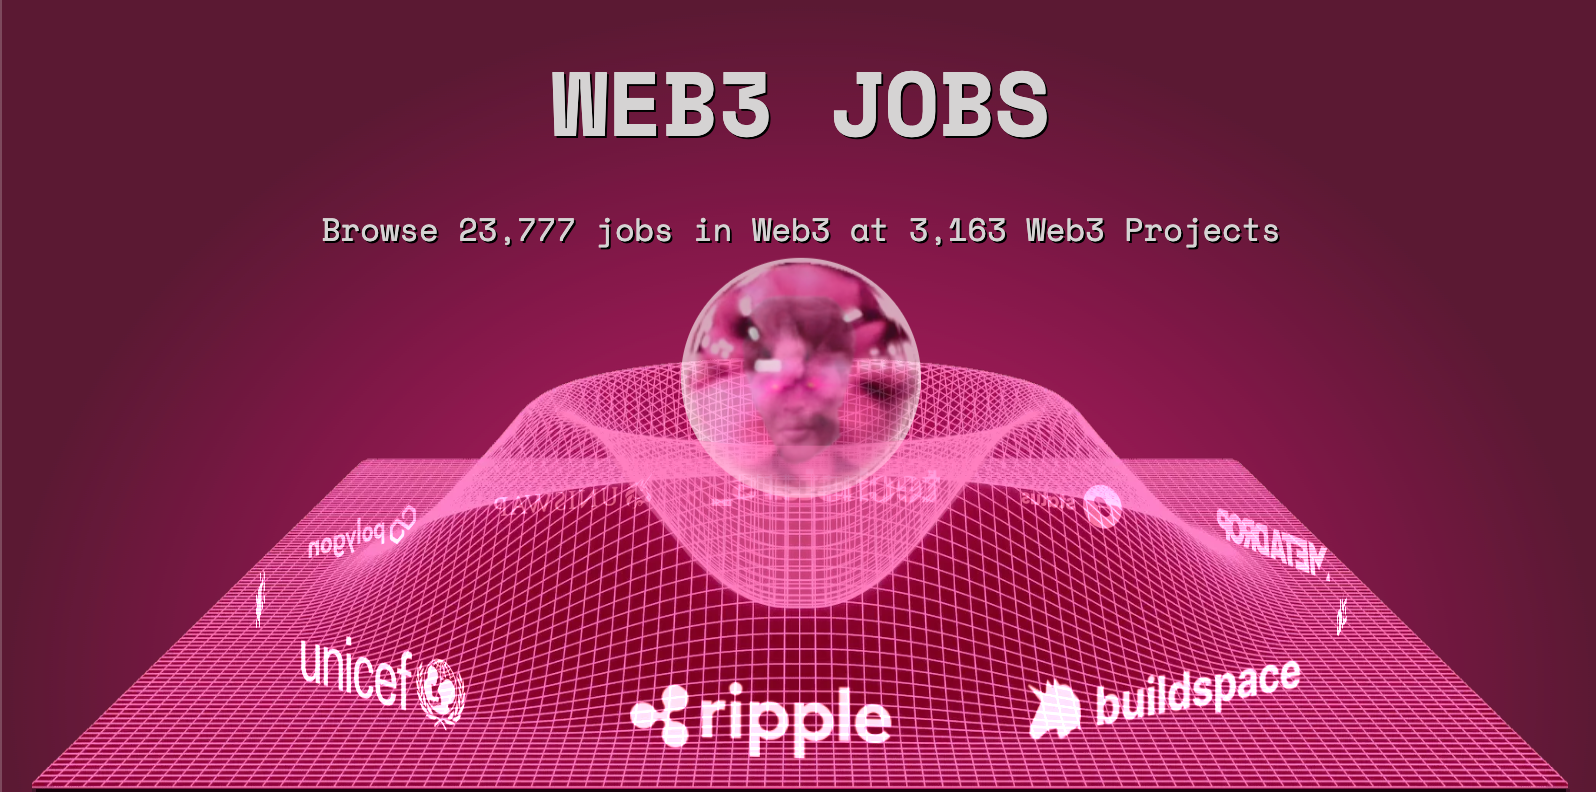 Web3 Jobs